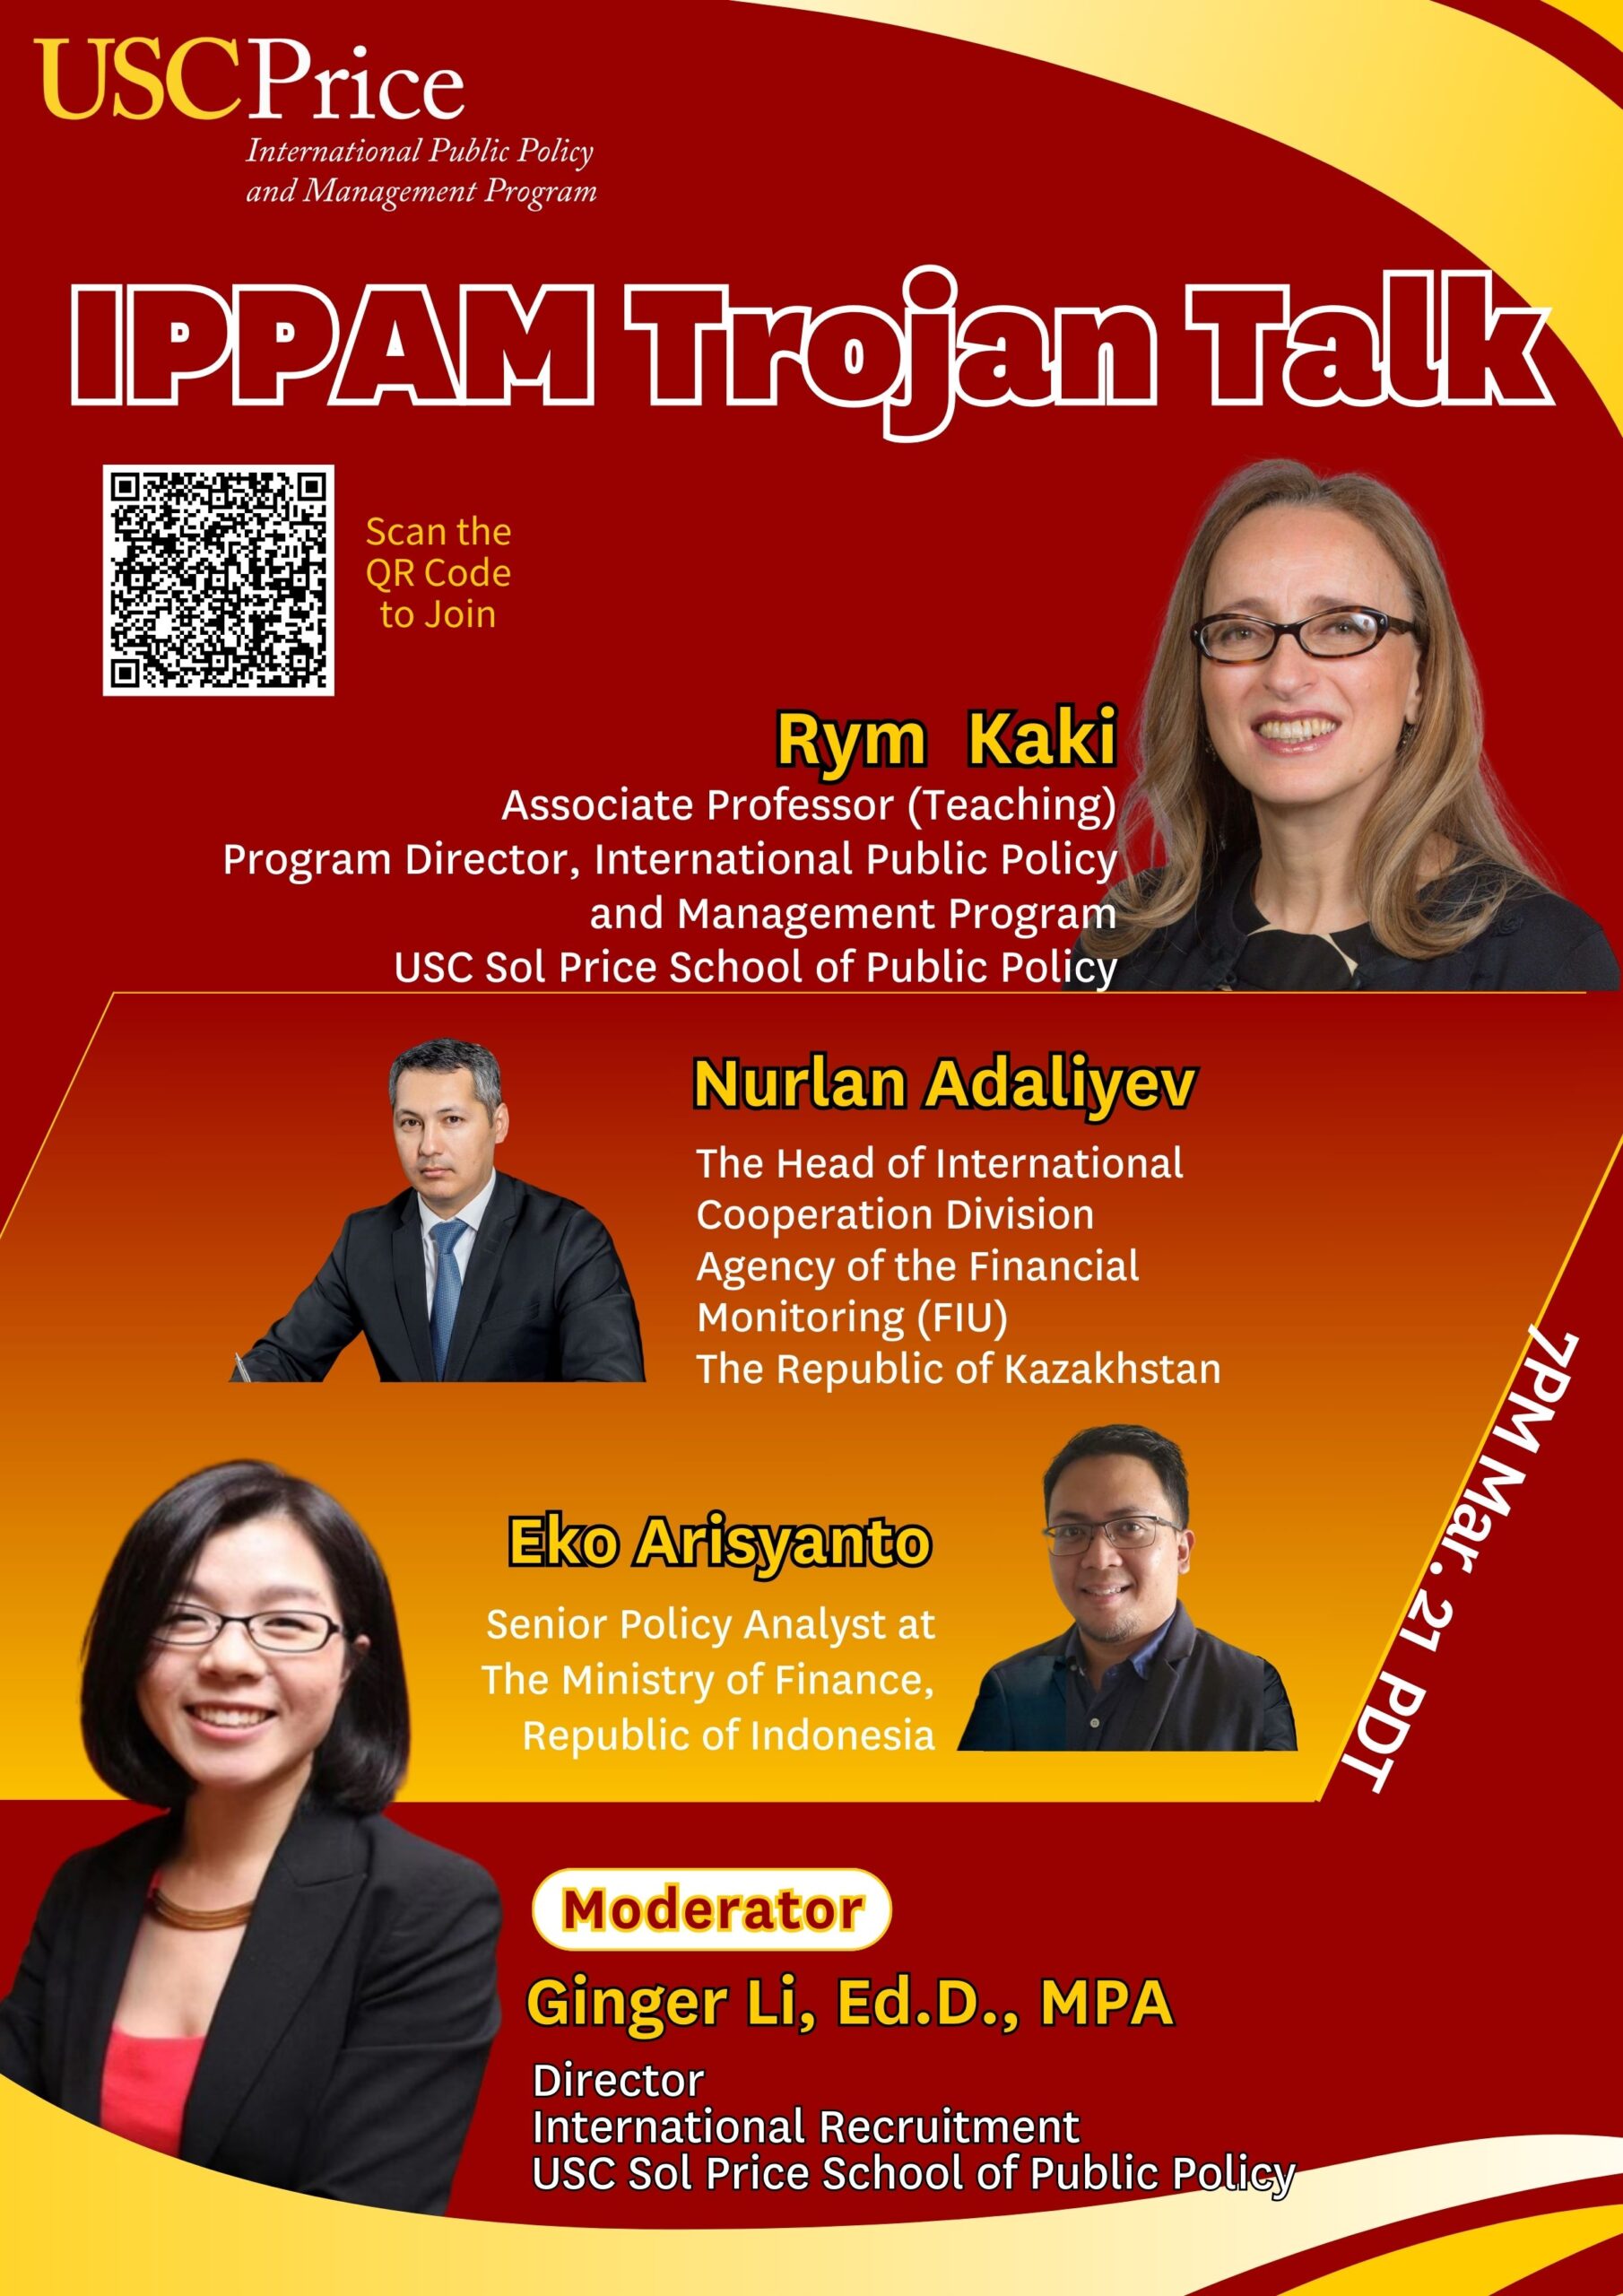 IPPAM Trojan Talk